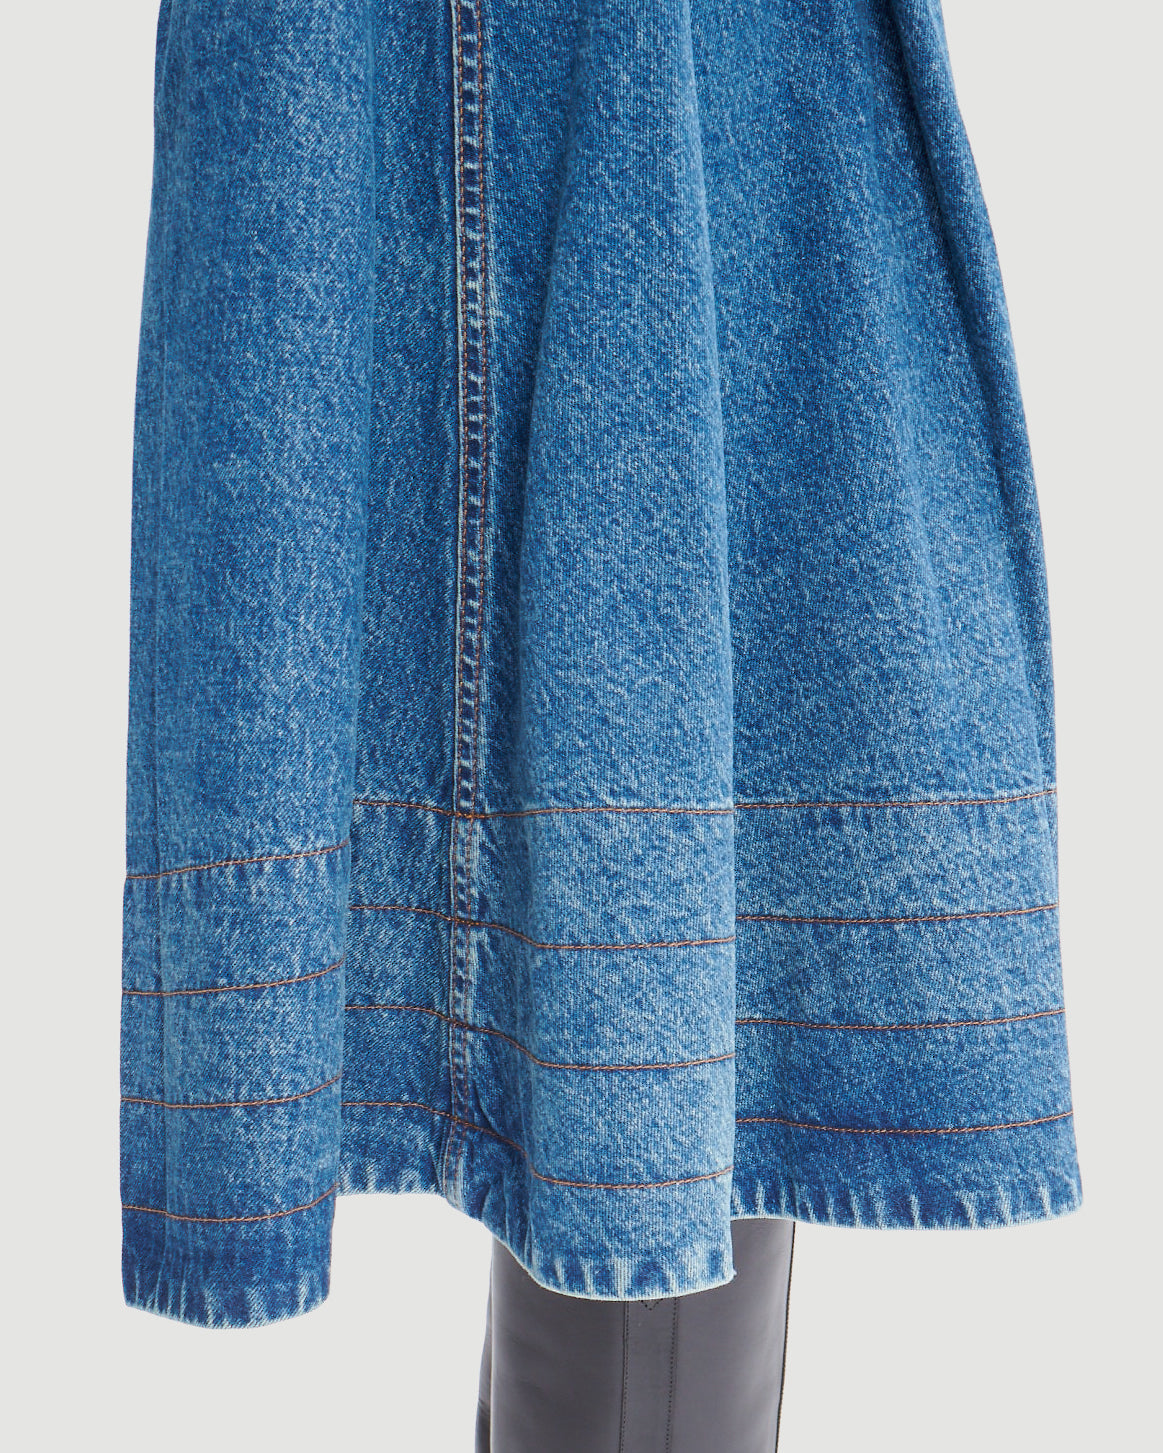 A.P.C. Jupe Nora Light Blue Skirt